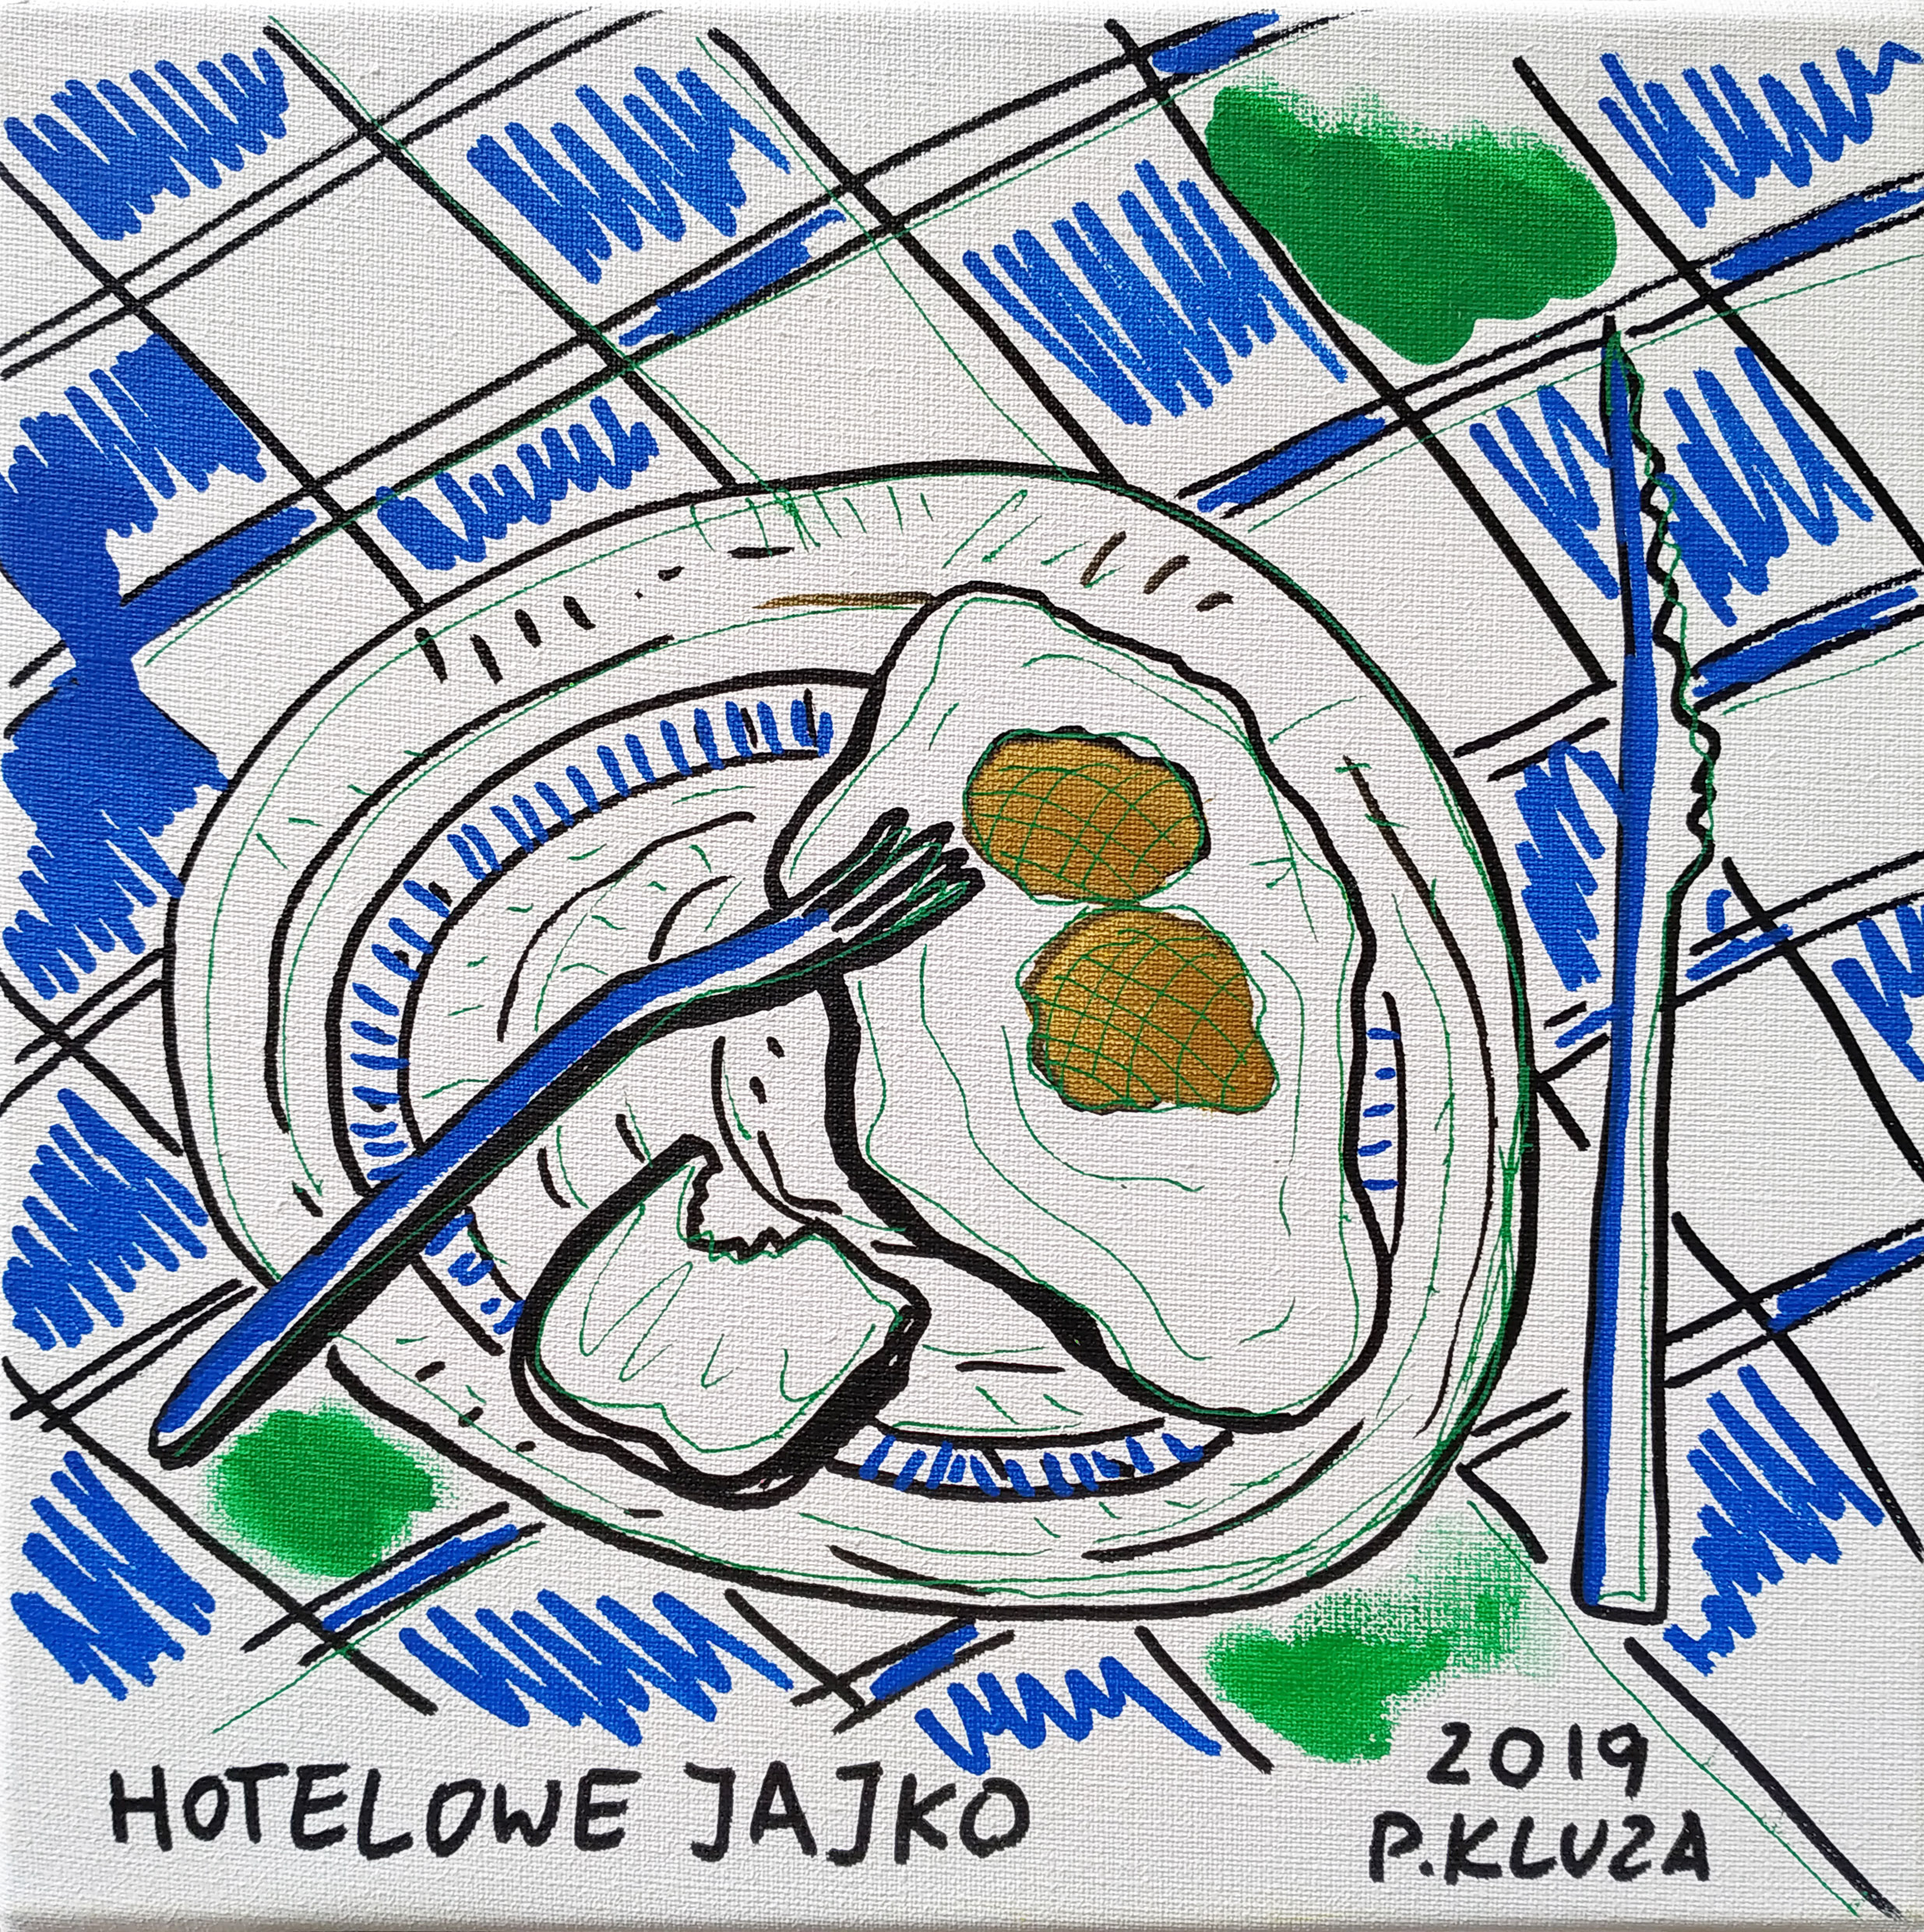 Hotelowe jajko — Paweł Kluza